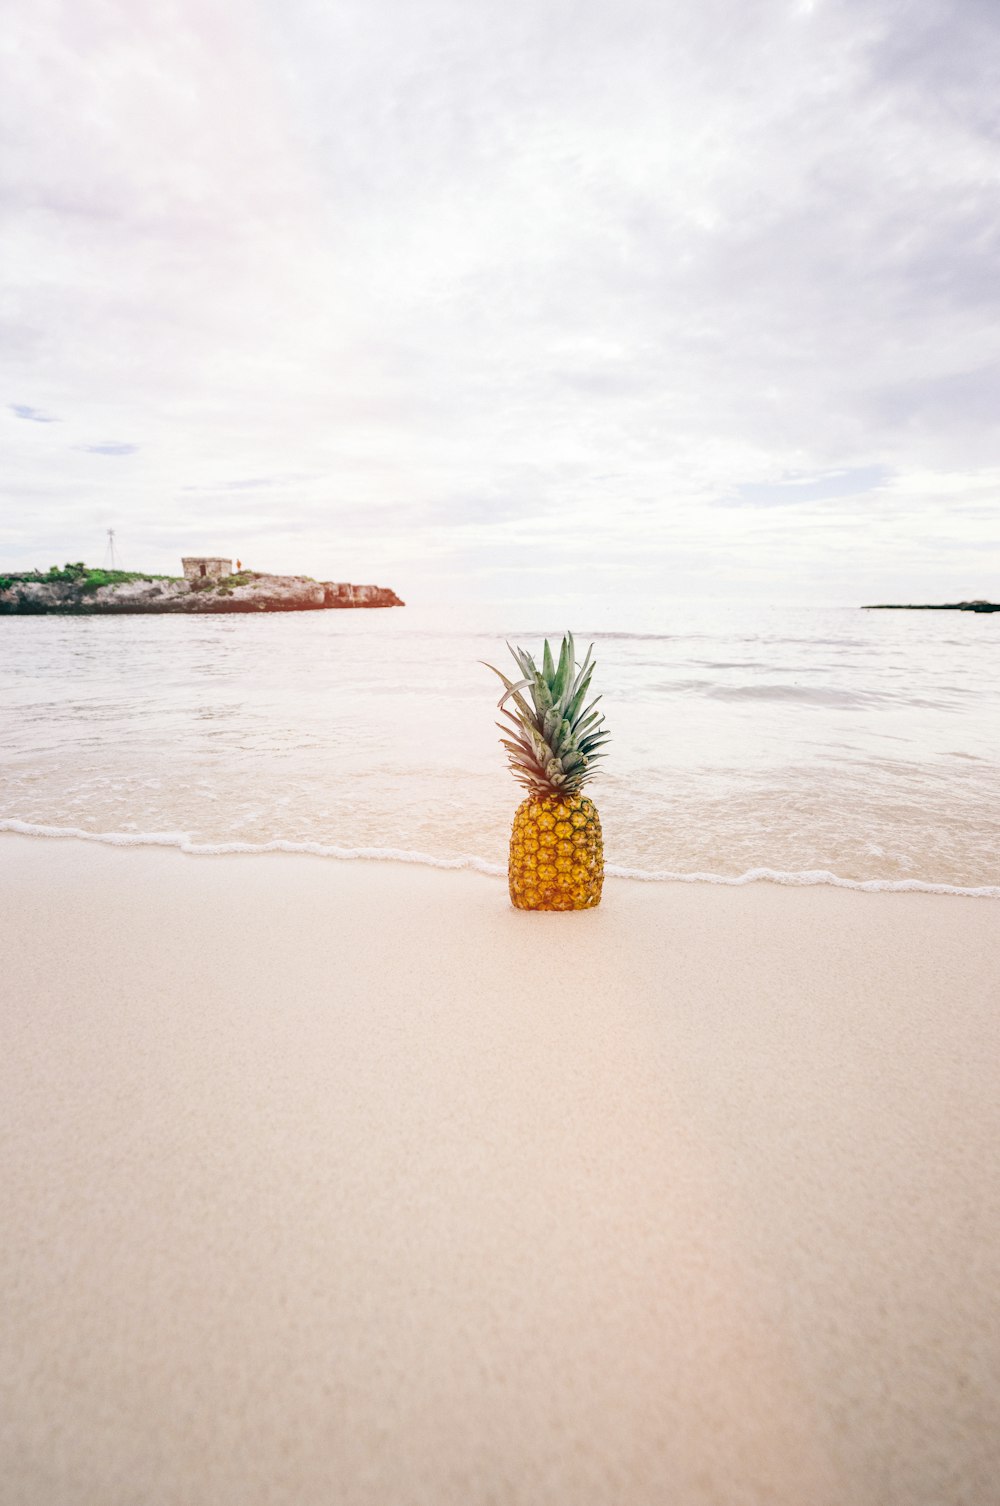 Ananas sulla sabbia vicino alla spiaggia